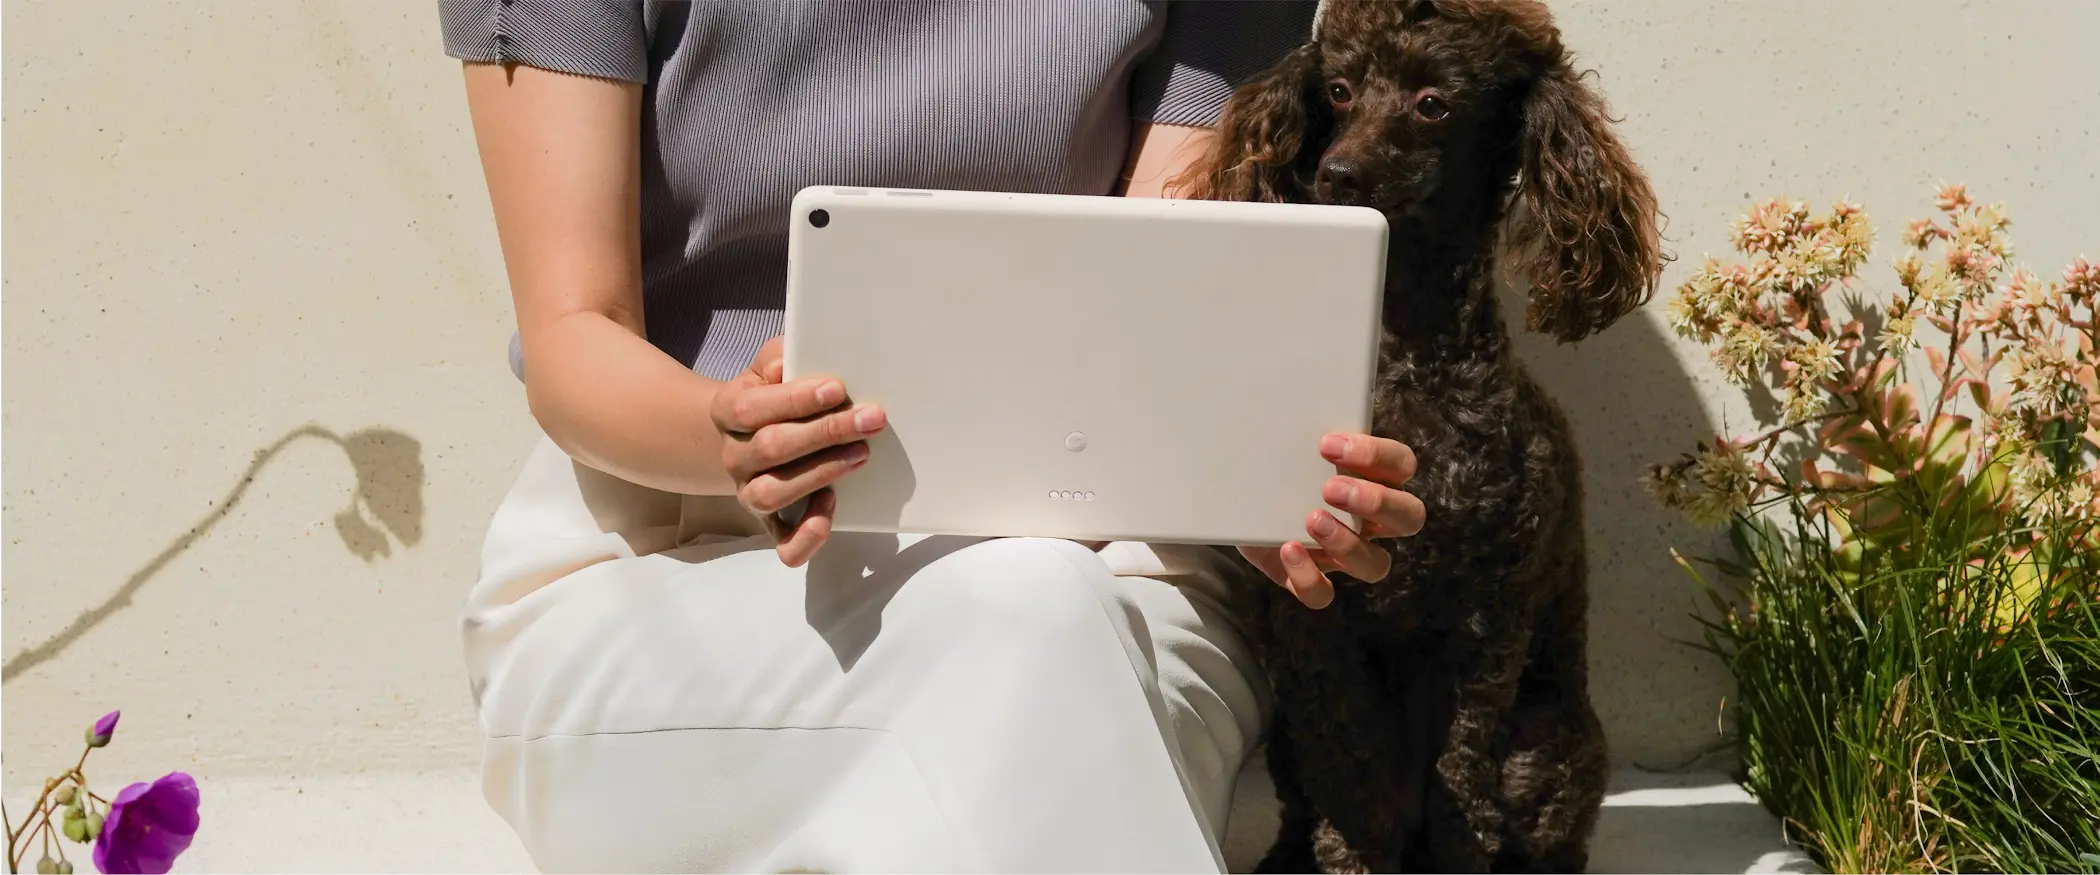 Pixel Tablet přijde až příští rok, Google i tak opět láká